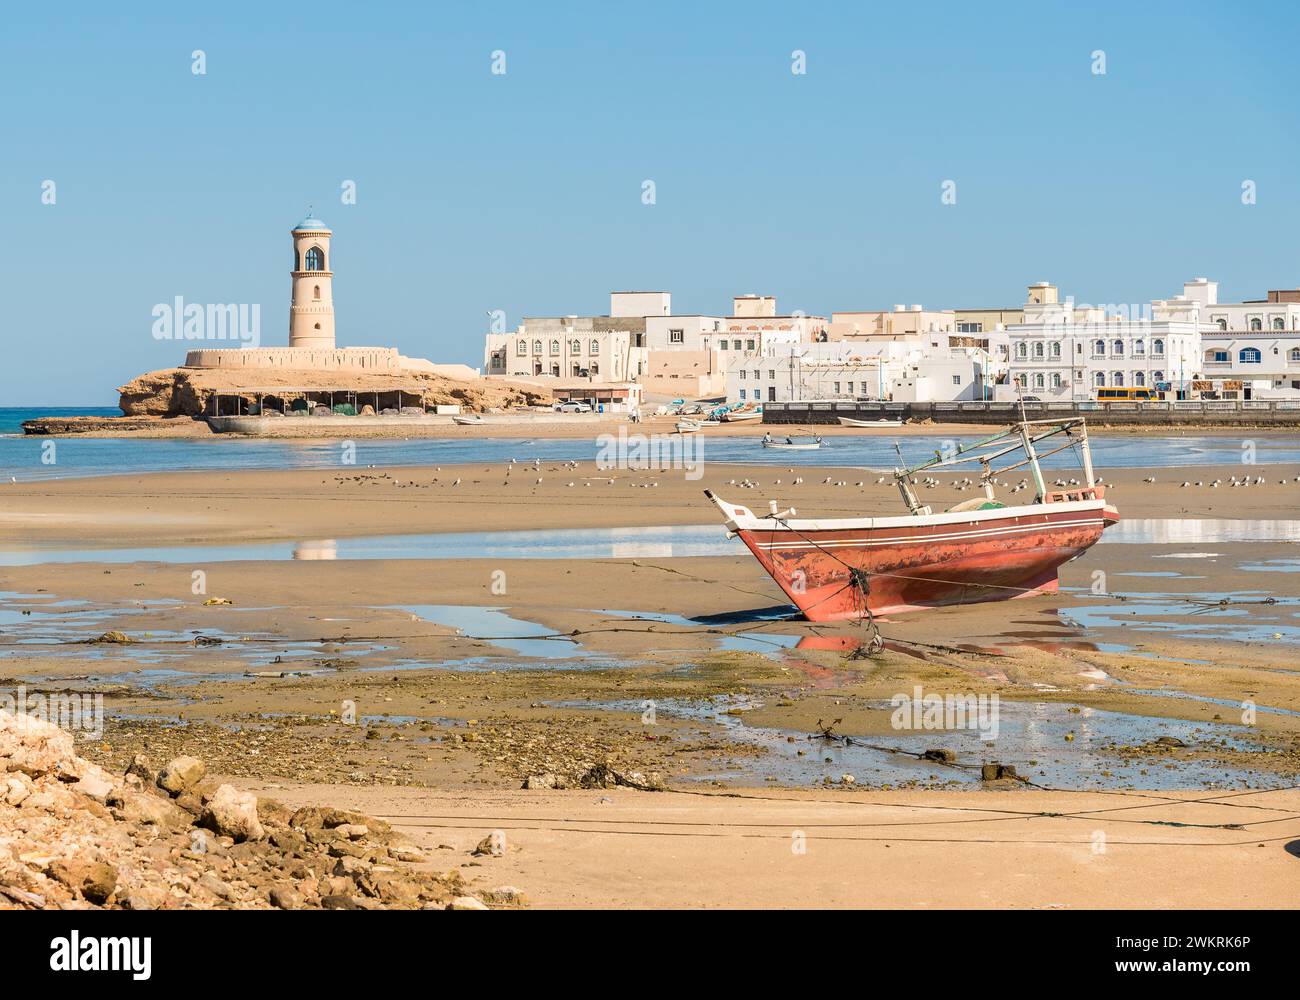 Paysage de la baie de sur avec le phare d'Al Ayjah, Sultanat d'Oman au moyen-Orient Banque D'Images